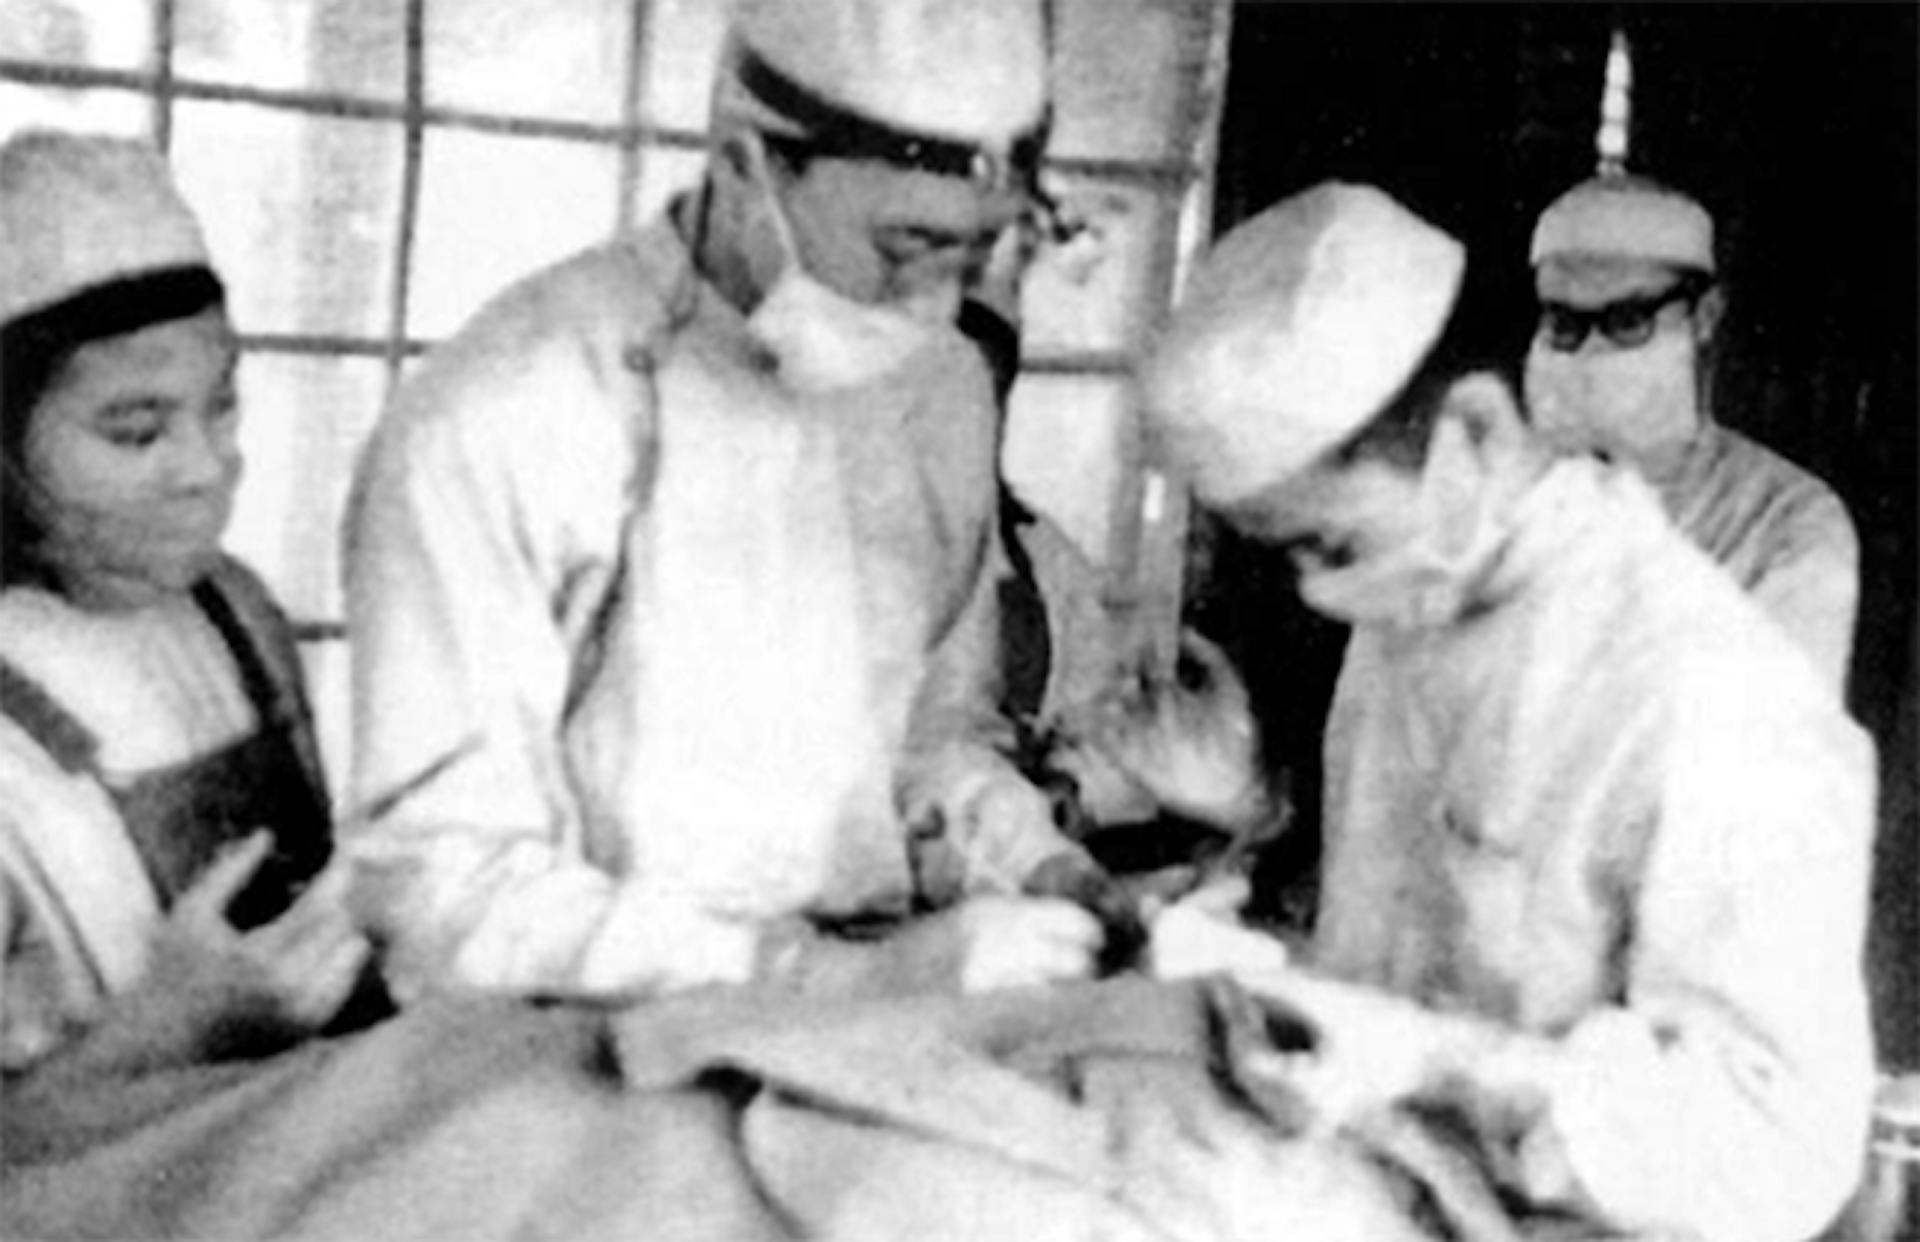 Năm 1953, Chính phủ, Bộ Y tế cho thành lập Bệnh khoa Tai Mũi Họng trong an toàn khu (ATK) của Trung ương ở Việt Bắc và giao cho bác sĩ Trần Hữu Tước phụ trách để thành lập phát triển. Ngày đó, phòng mổ chỉ có diện tích khoảng 50m2, vách được làm bằng nứa, ở dưới đan dày hơn, phía trên đan thưa để lấy ánh sáng, ở giữa là cửa sổ có chấn song tre được che bằng vải nhuộm xanh để ngăn ruồi, muỗi.